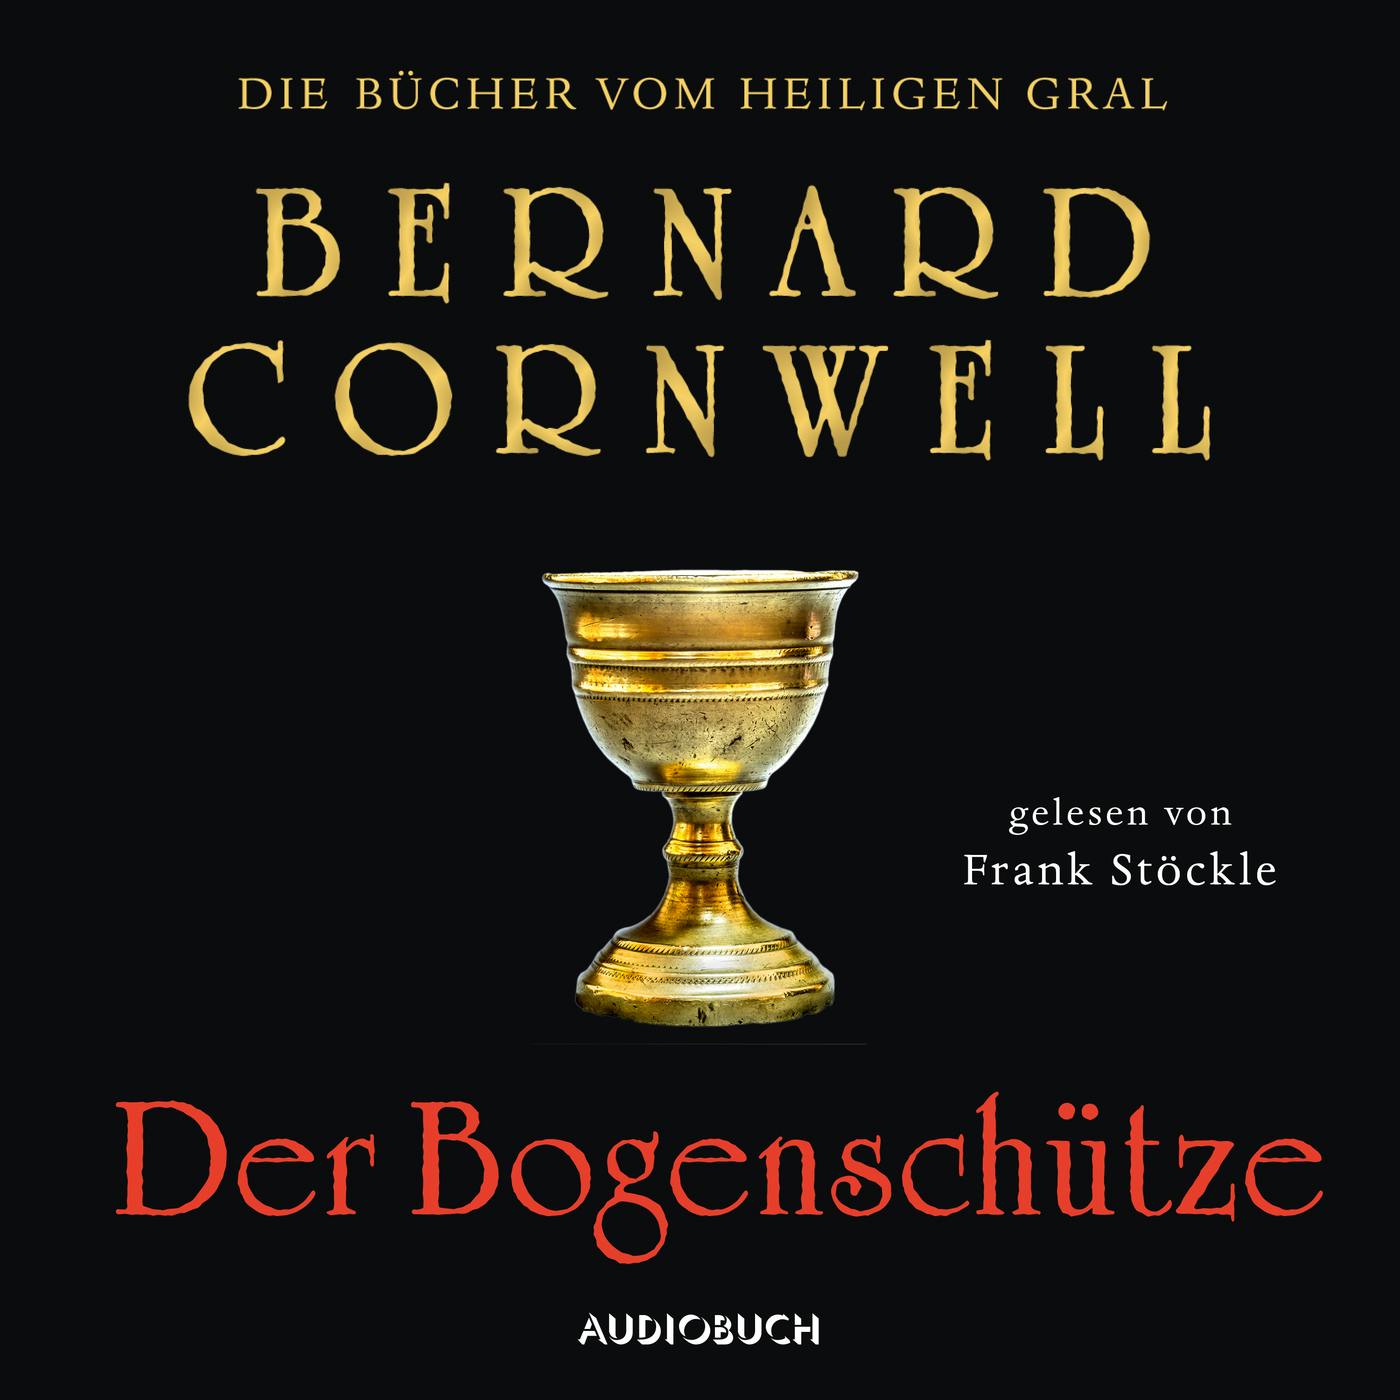 Der Bogenschütze - Die Bücher vom heiligen Gral 1 (Ungekürzt) - Bernard Cornwell